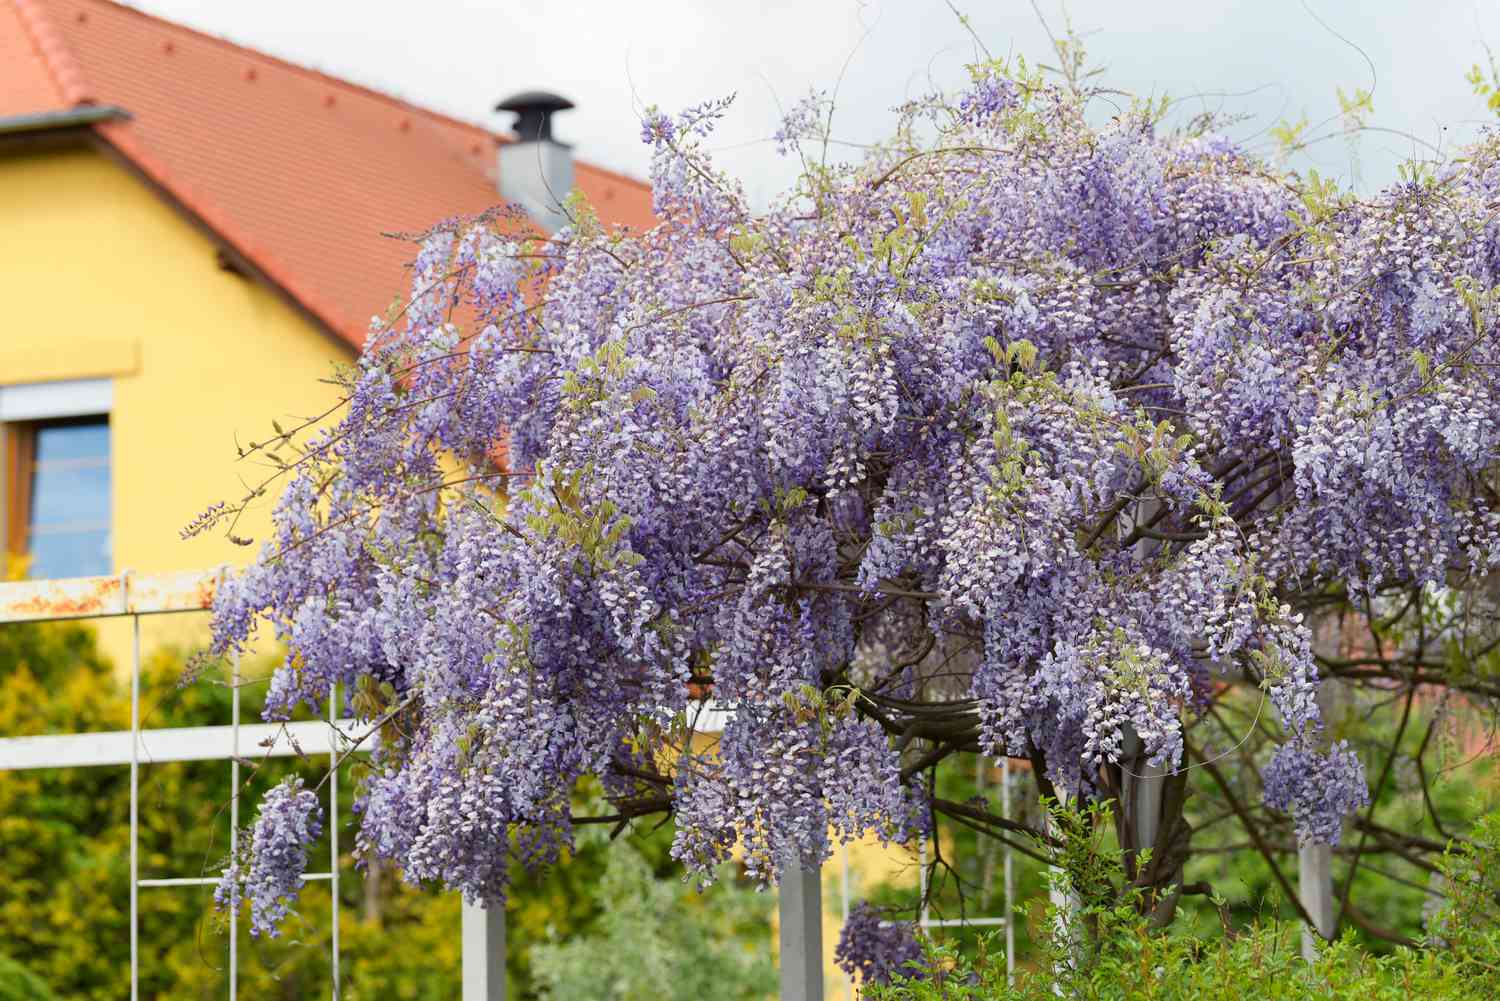 Japanischer Glyzinienbaum 'alba' mit violetten Blütentrauben an den Ästen vor gelbem Haus